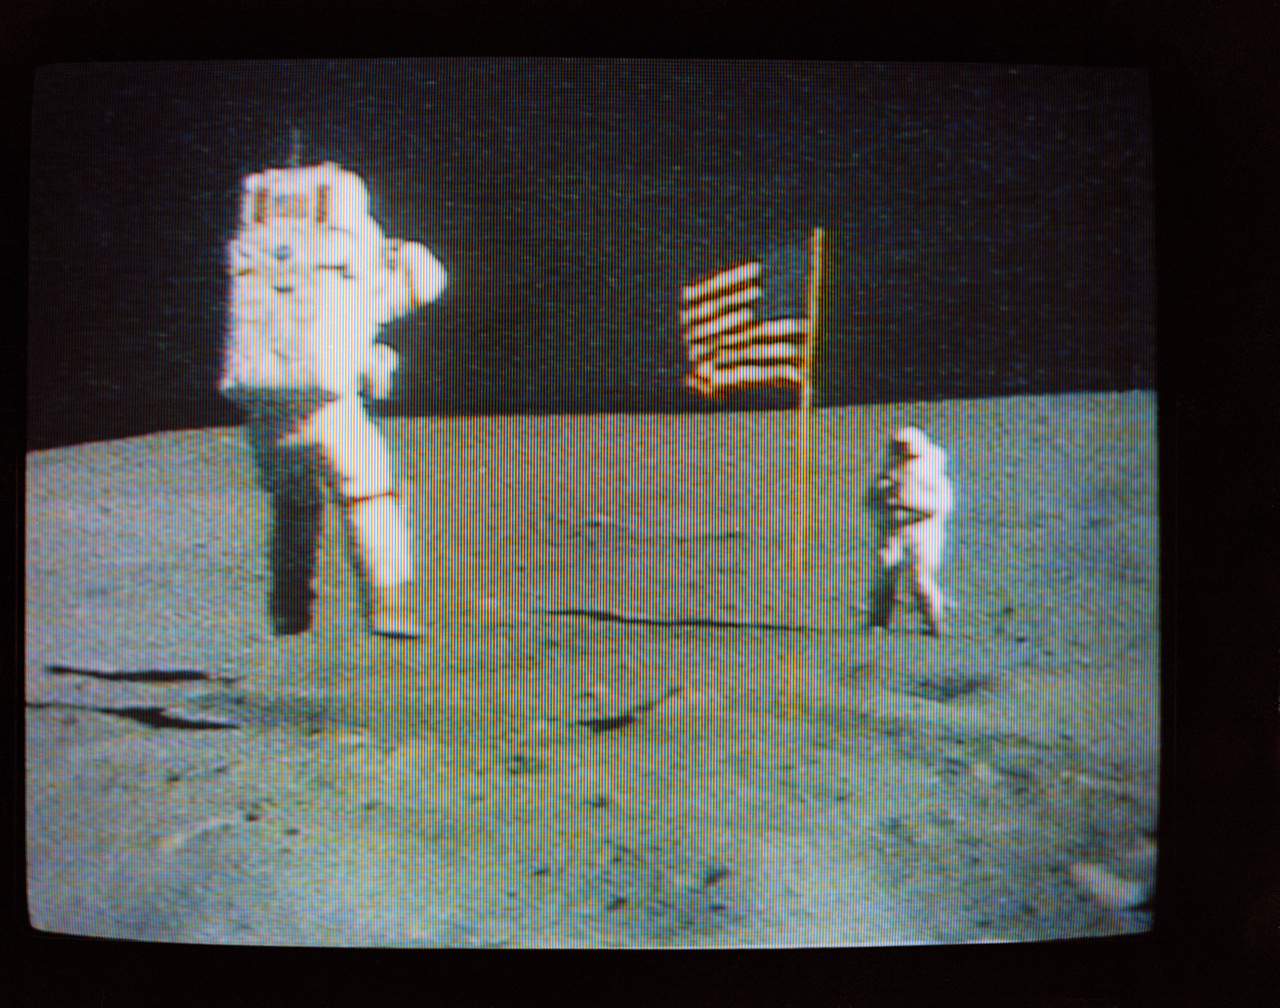 Így készült az előbbi fotó. A Hold felszínéről közvetítő színes tévékamera felvételén látható, amint Duke fényképezi a holdi gravitációval játszó Youngot.